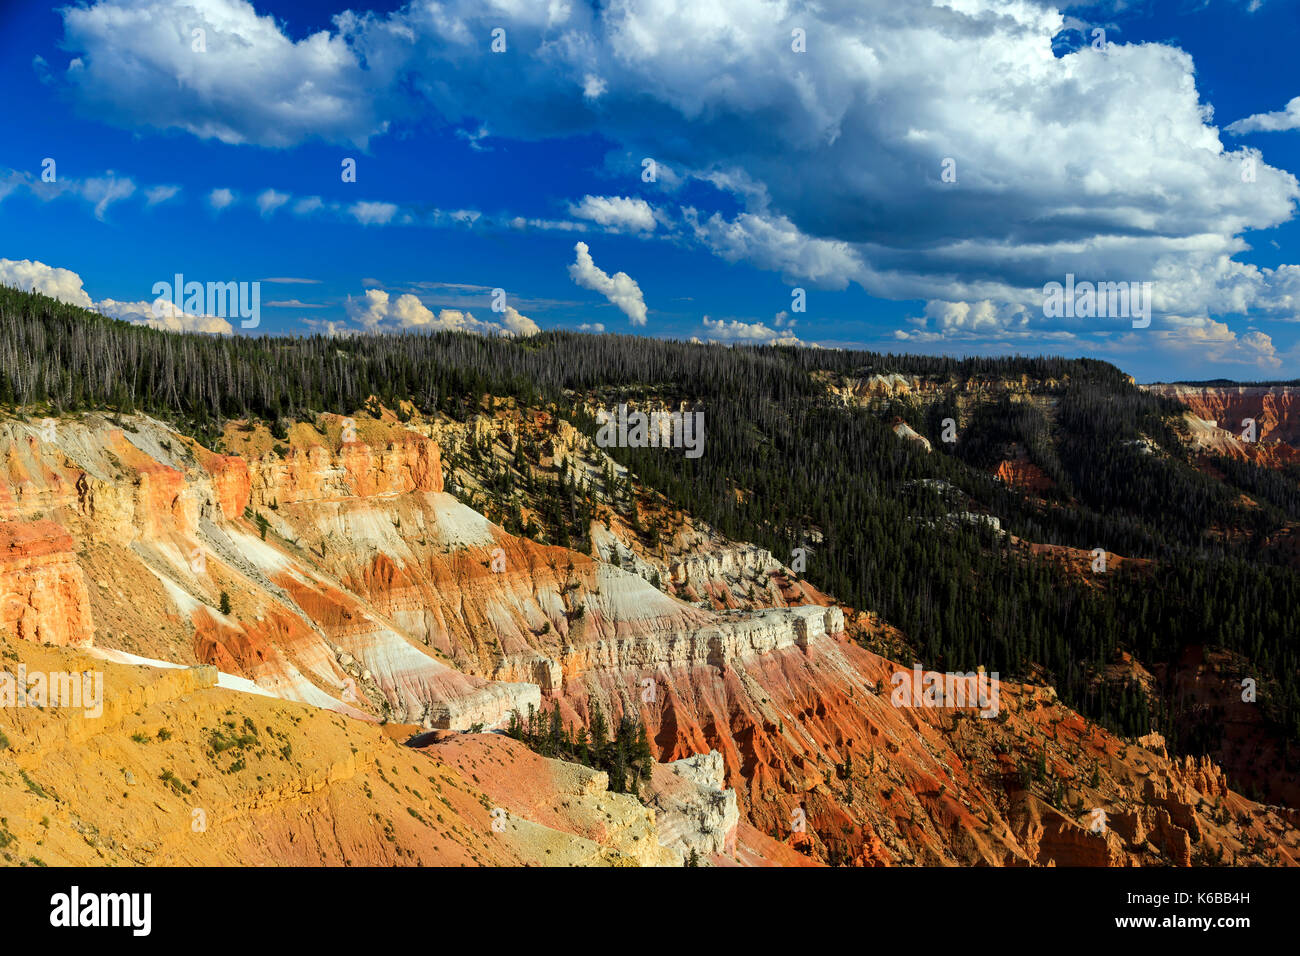 Esta es una vista de las rocas rojas y el área boscosa del anfiteatro de Cedar Breaks National Monument, Utah, EE.UU.. Foto de stock